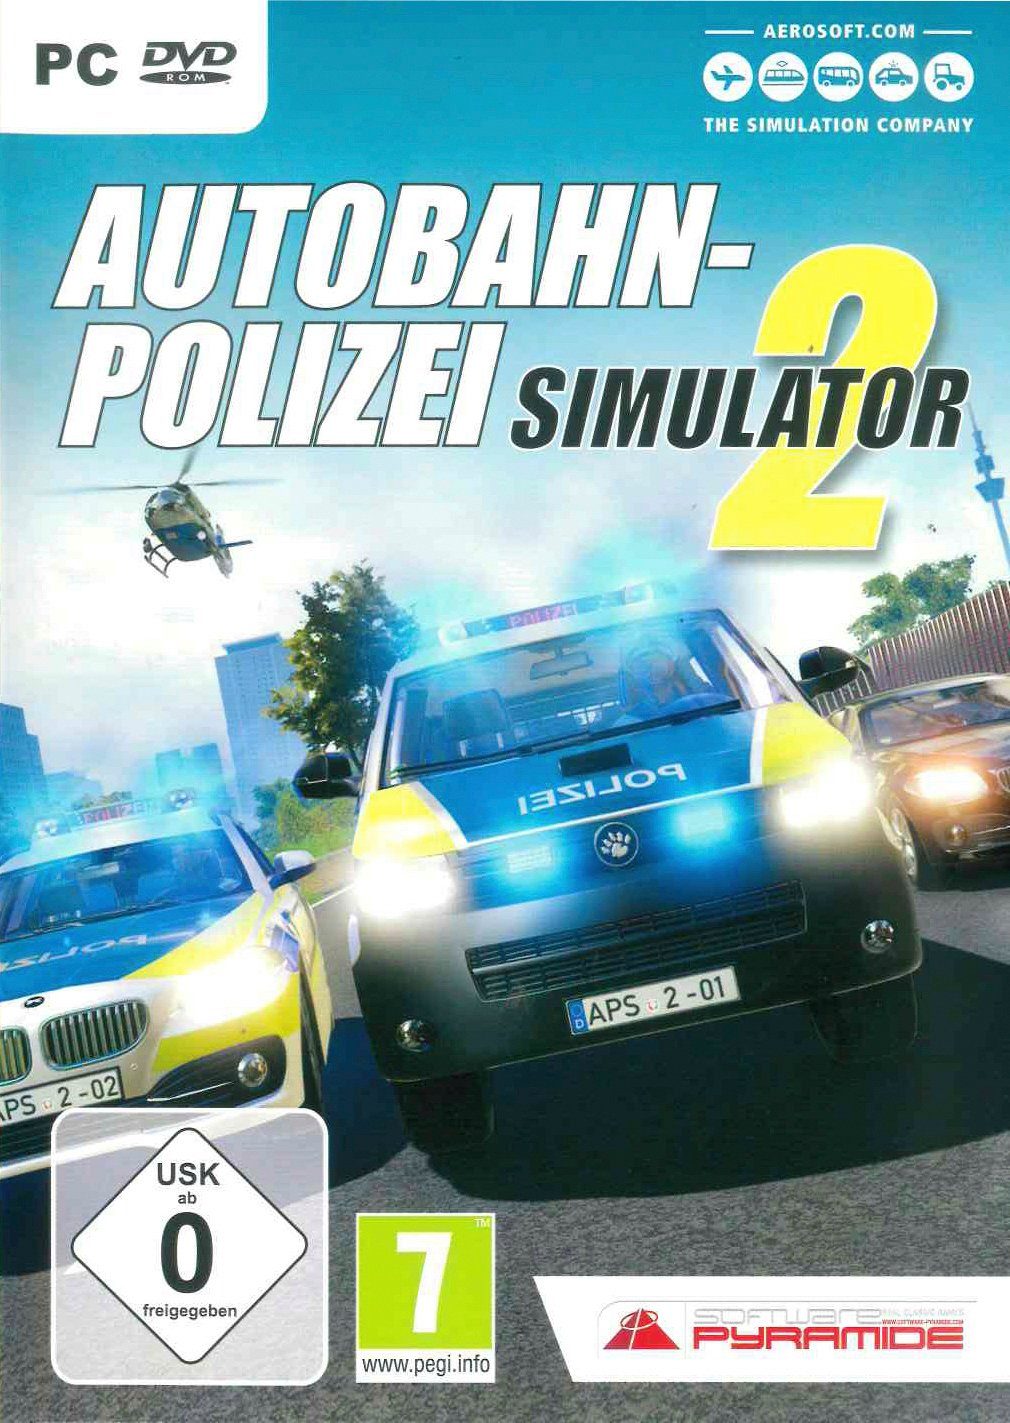 Autobahn-Polizei PC Simulator 2